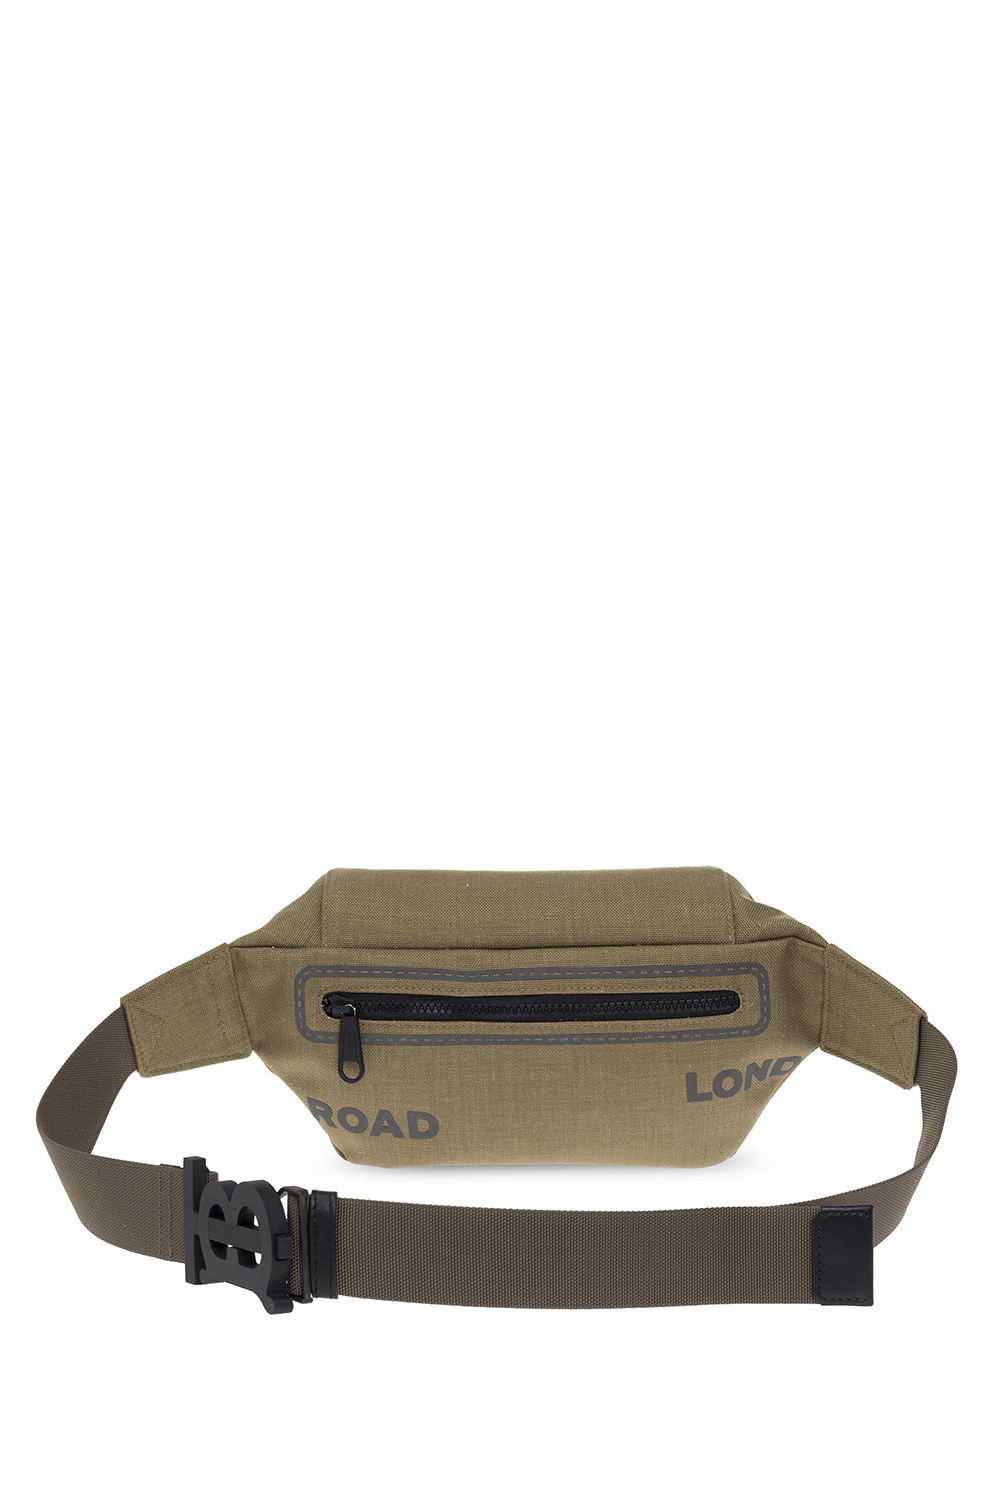 Burberry TB Belt Bag - Green Waist Bags, Handbags - BUR389760